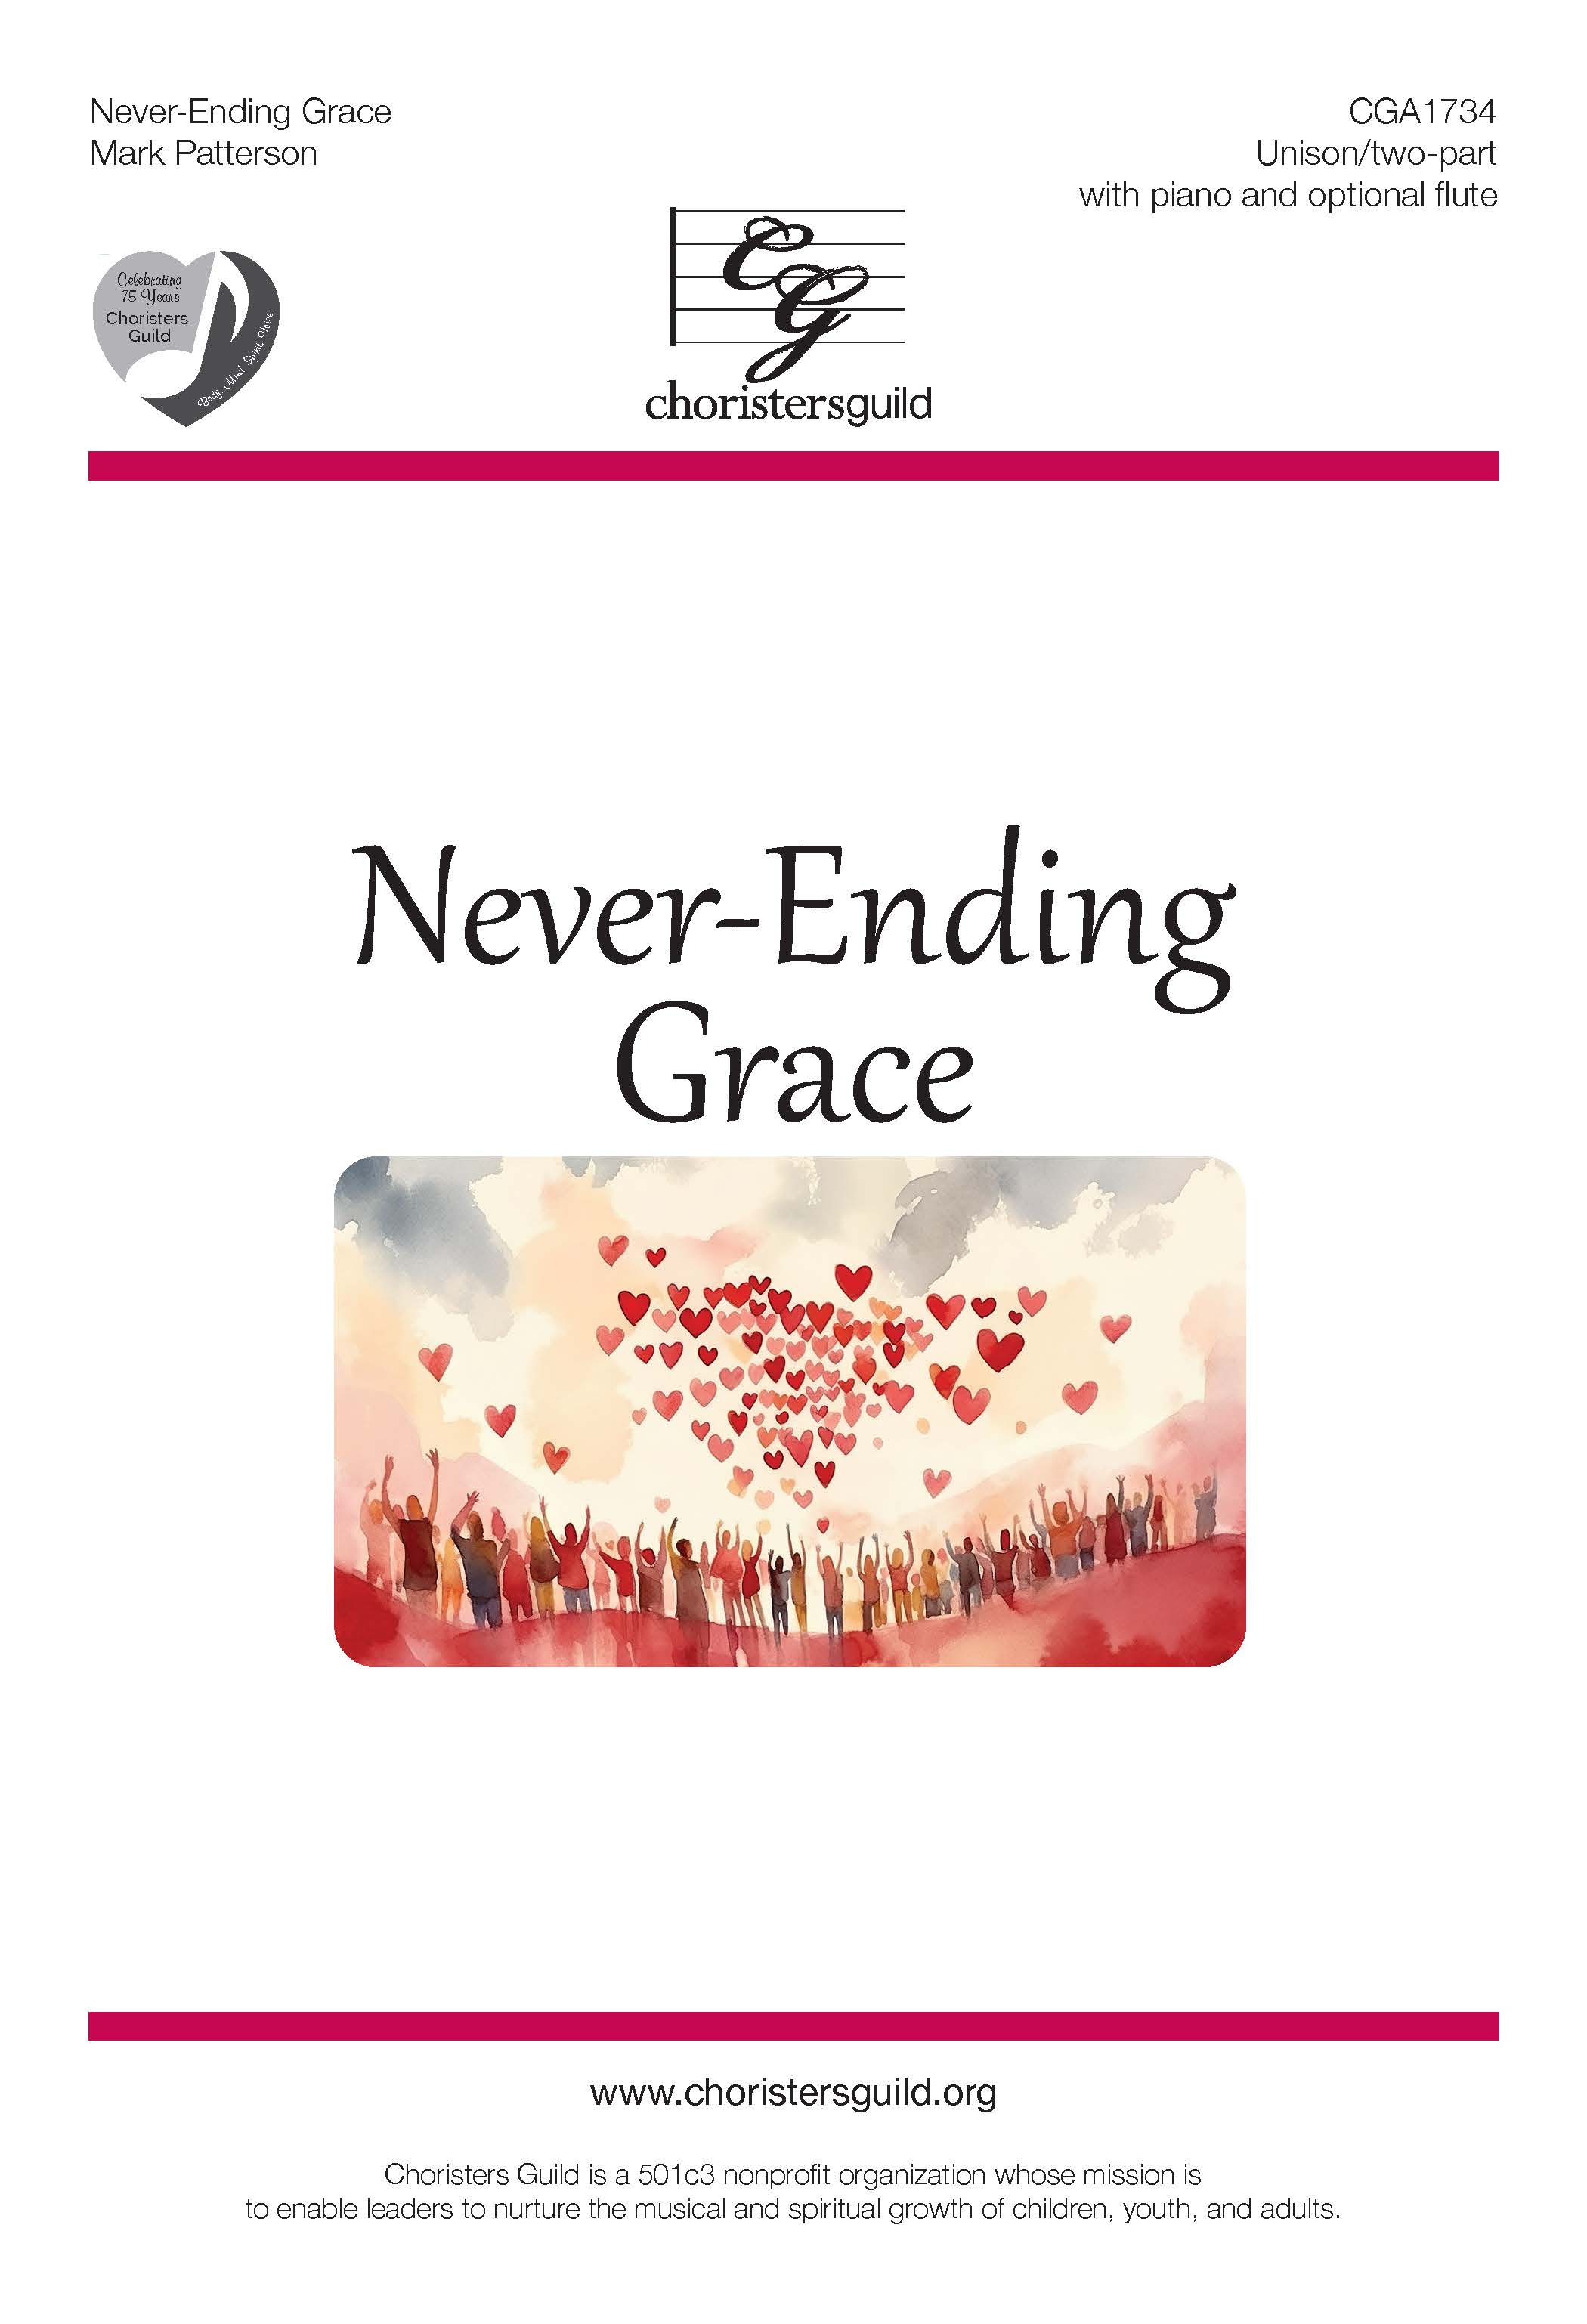 Never-Ending Grace - Unison/two-part